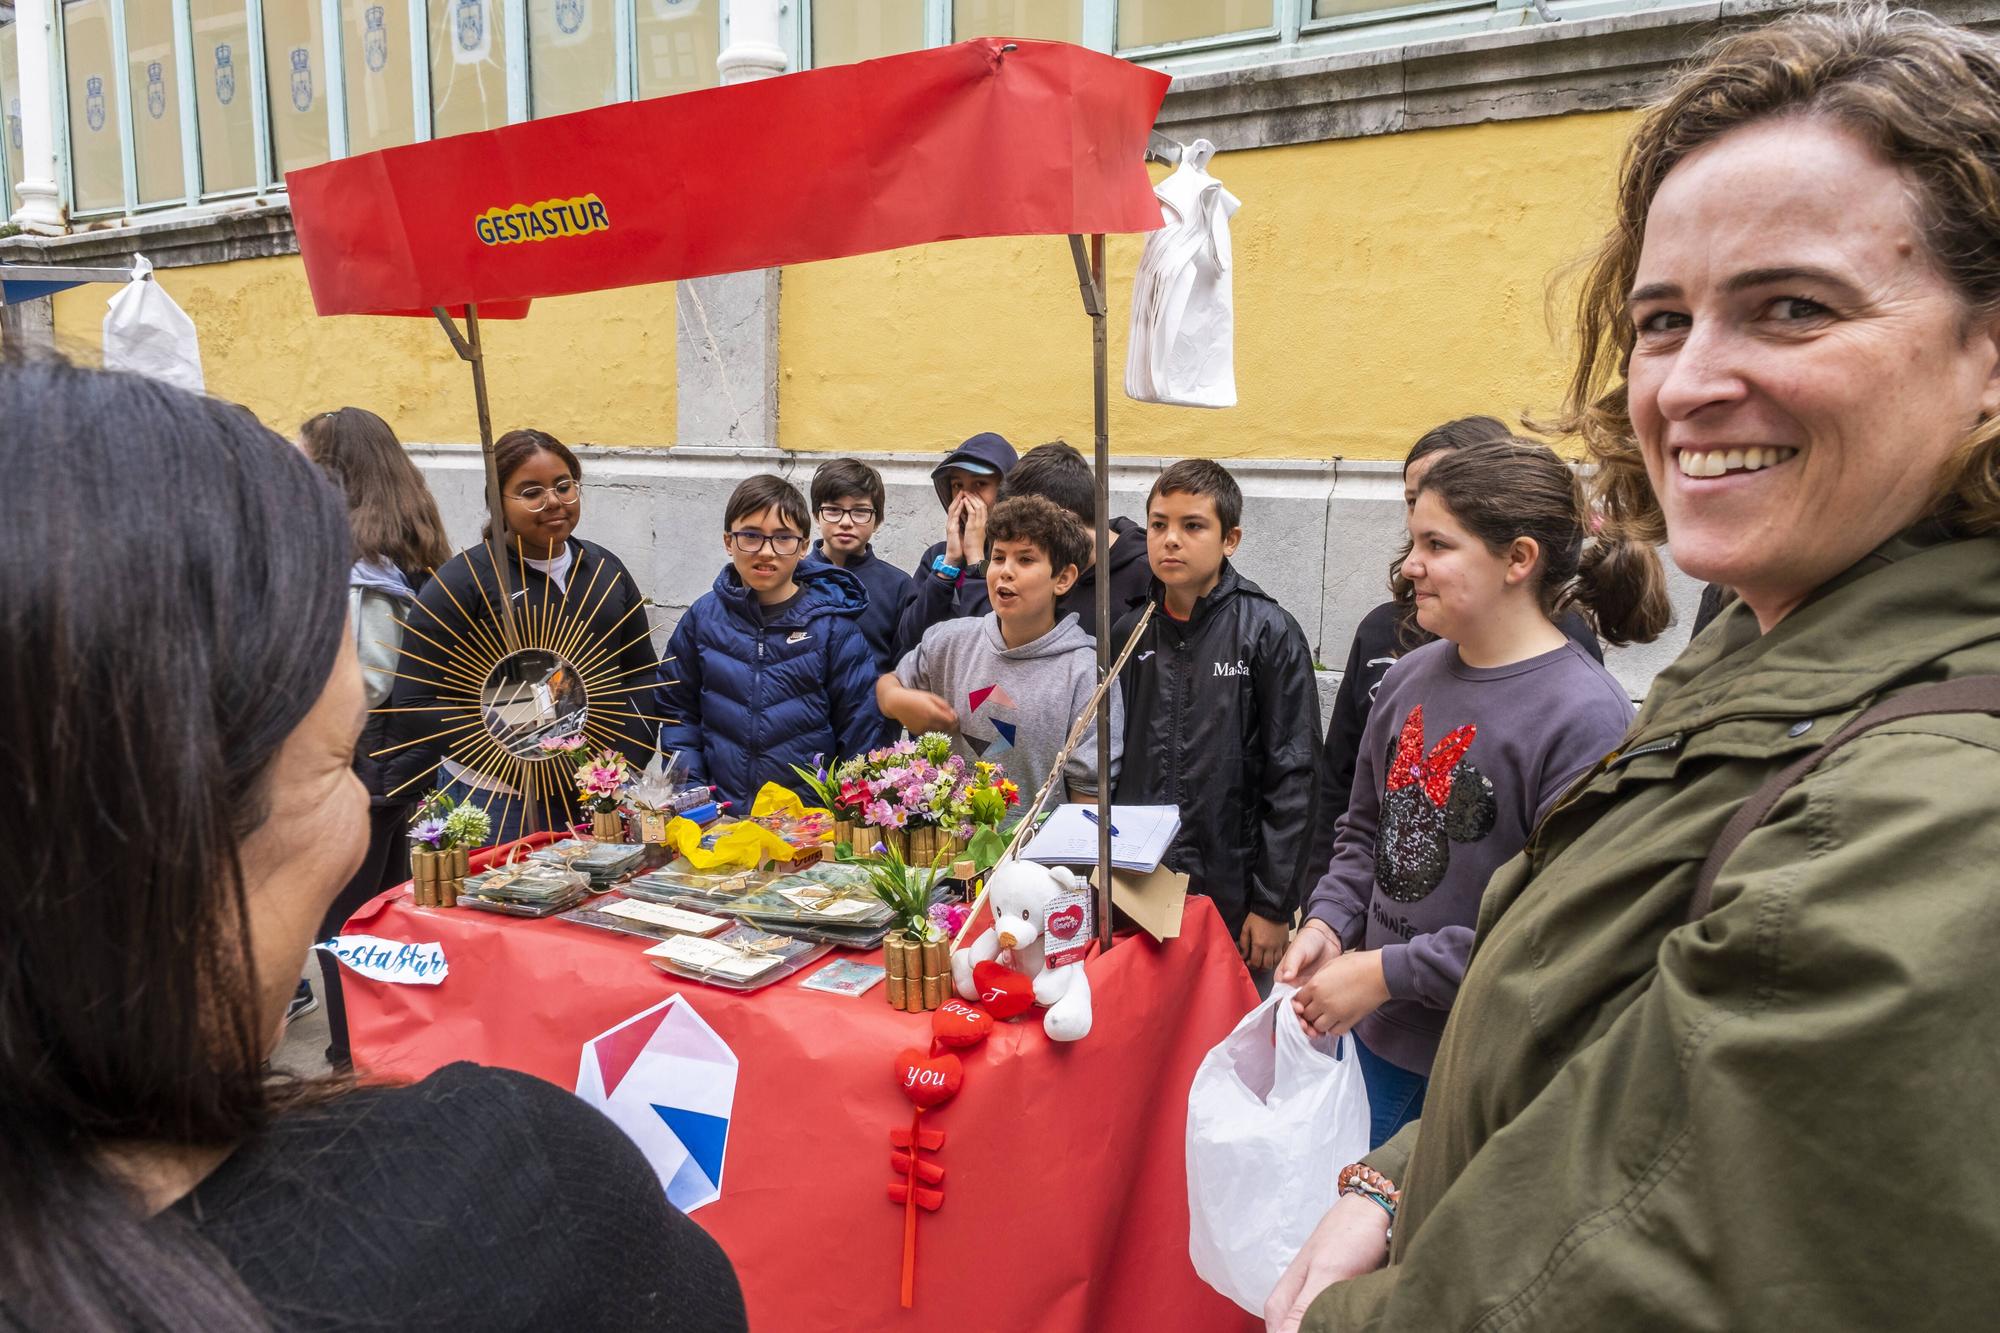 En imágenes: Mercados de Cooperativas y Asociaciones Educativas Asturianas en el Fontán